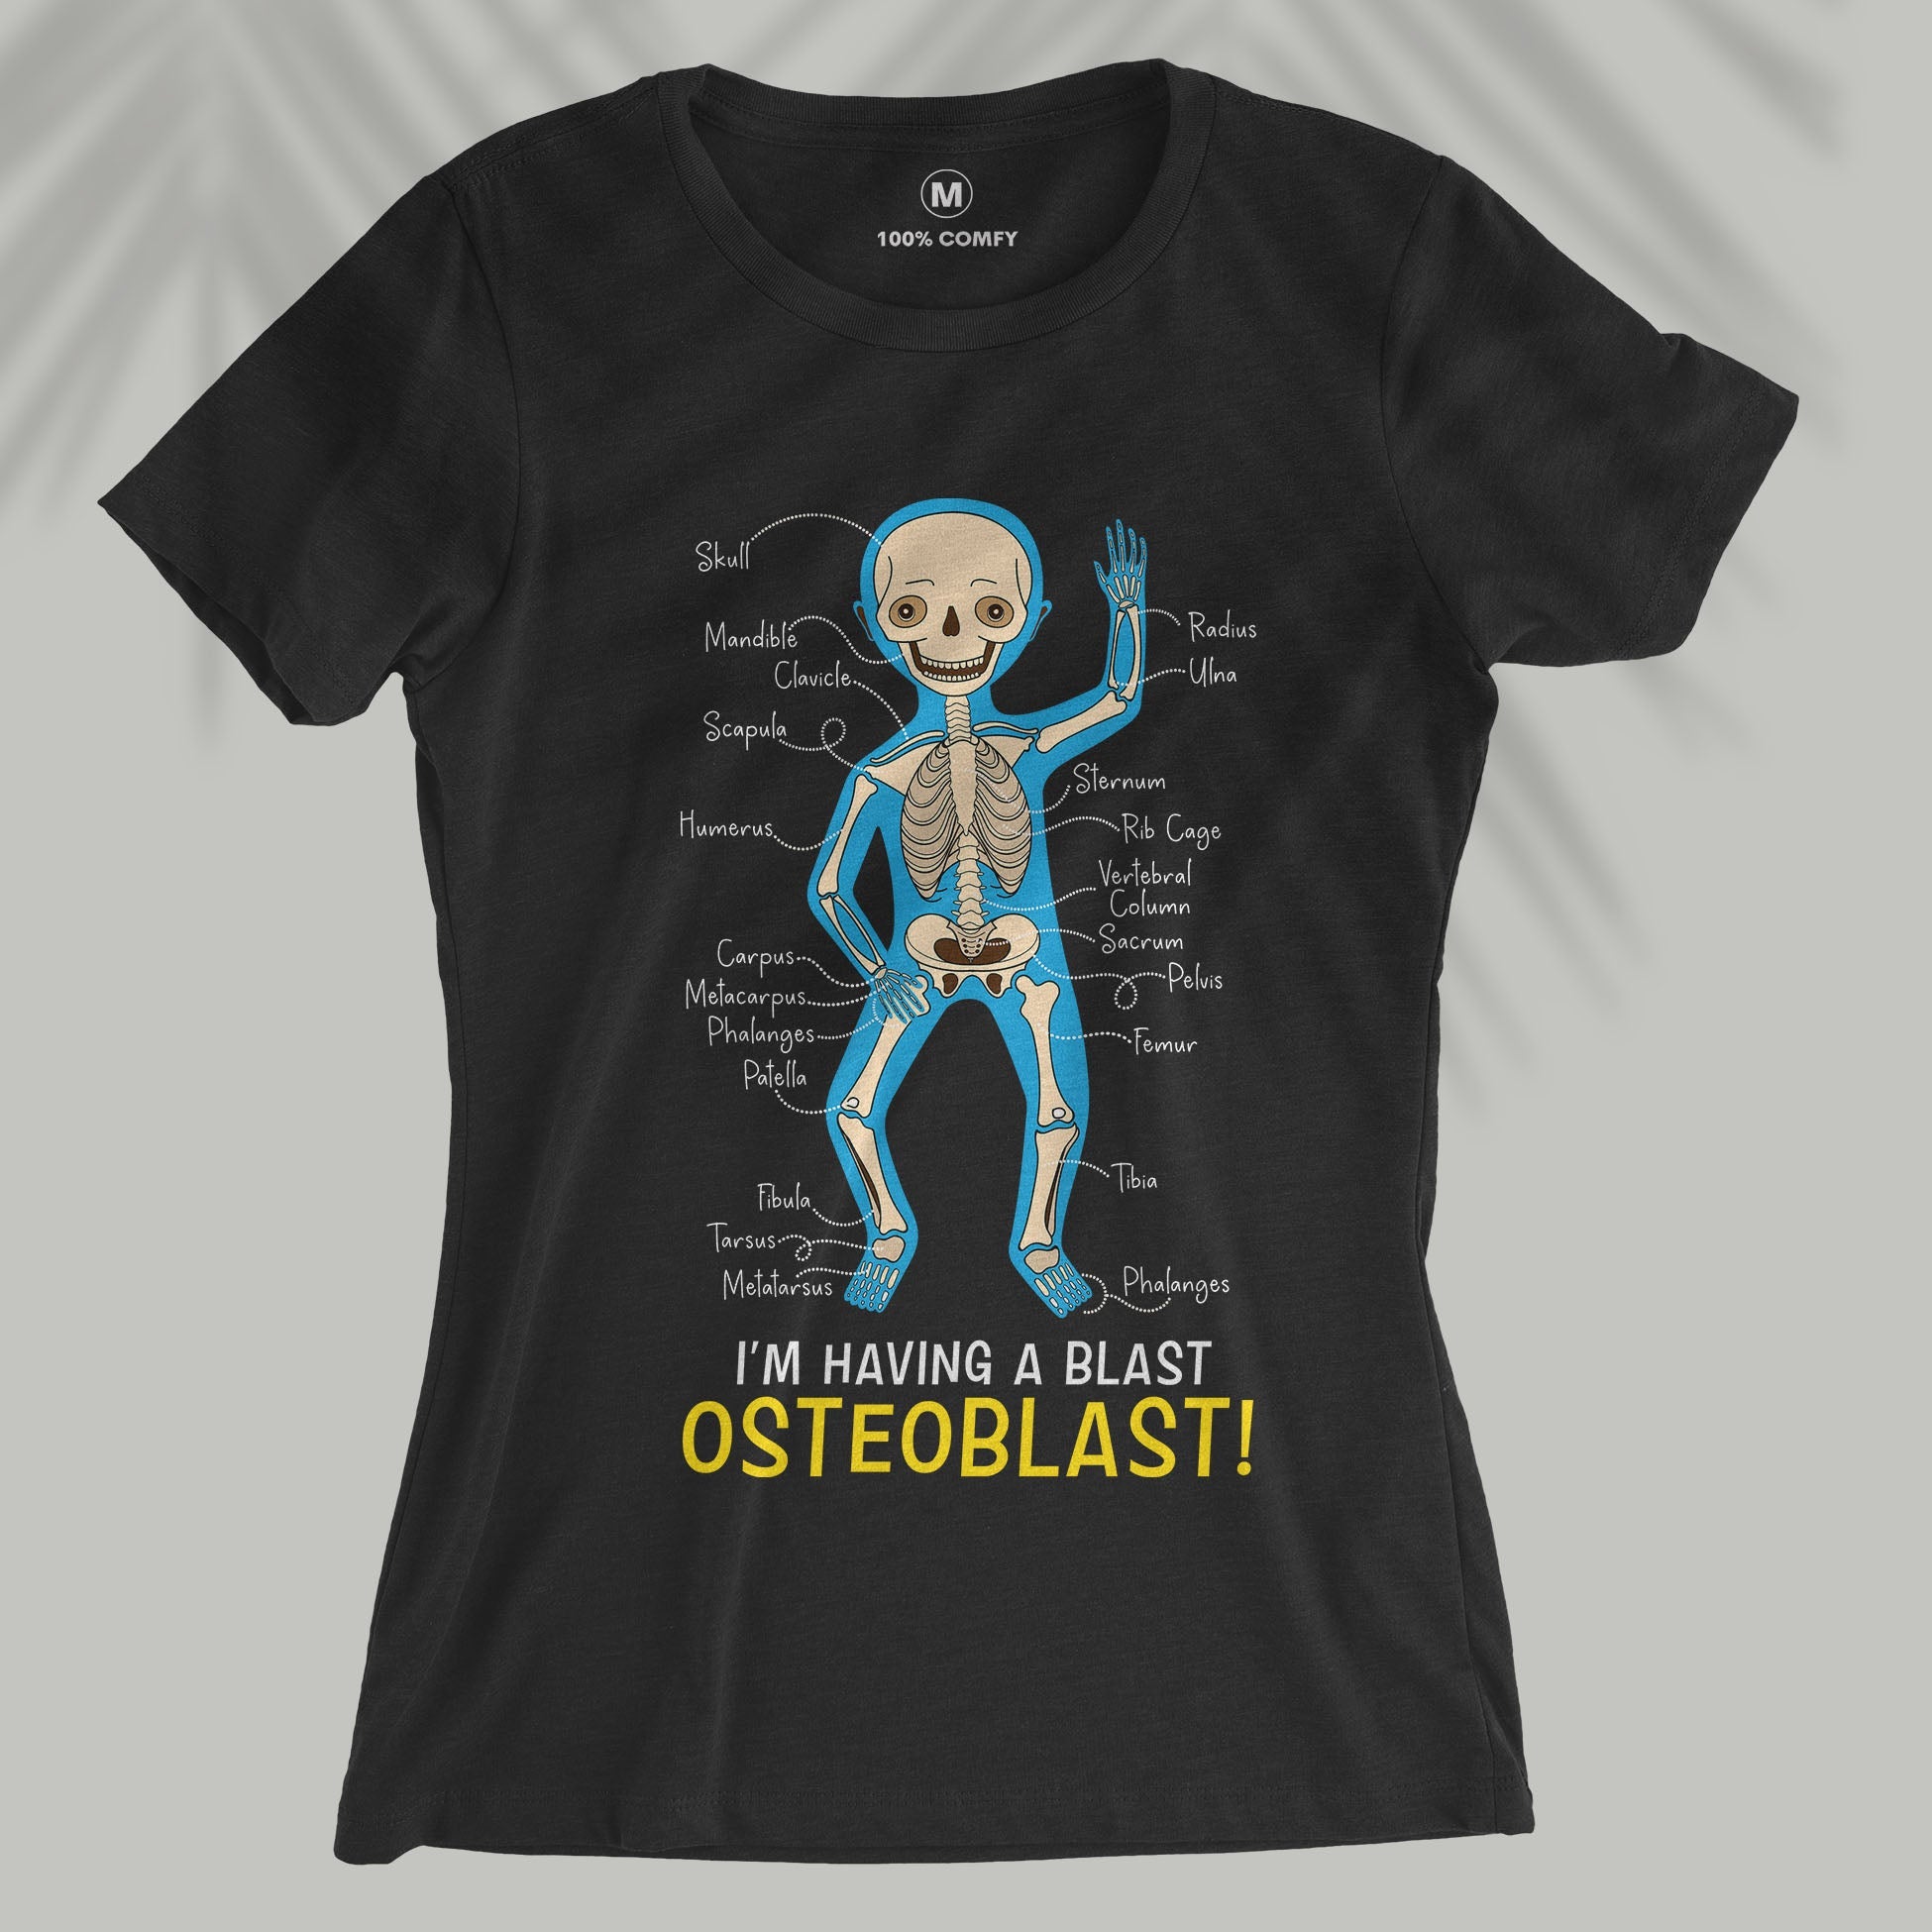 Osteoblast! - Women T-shirt